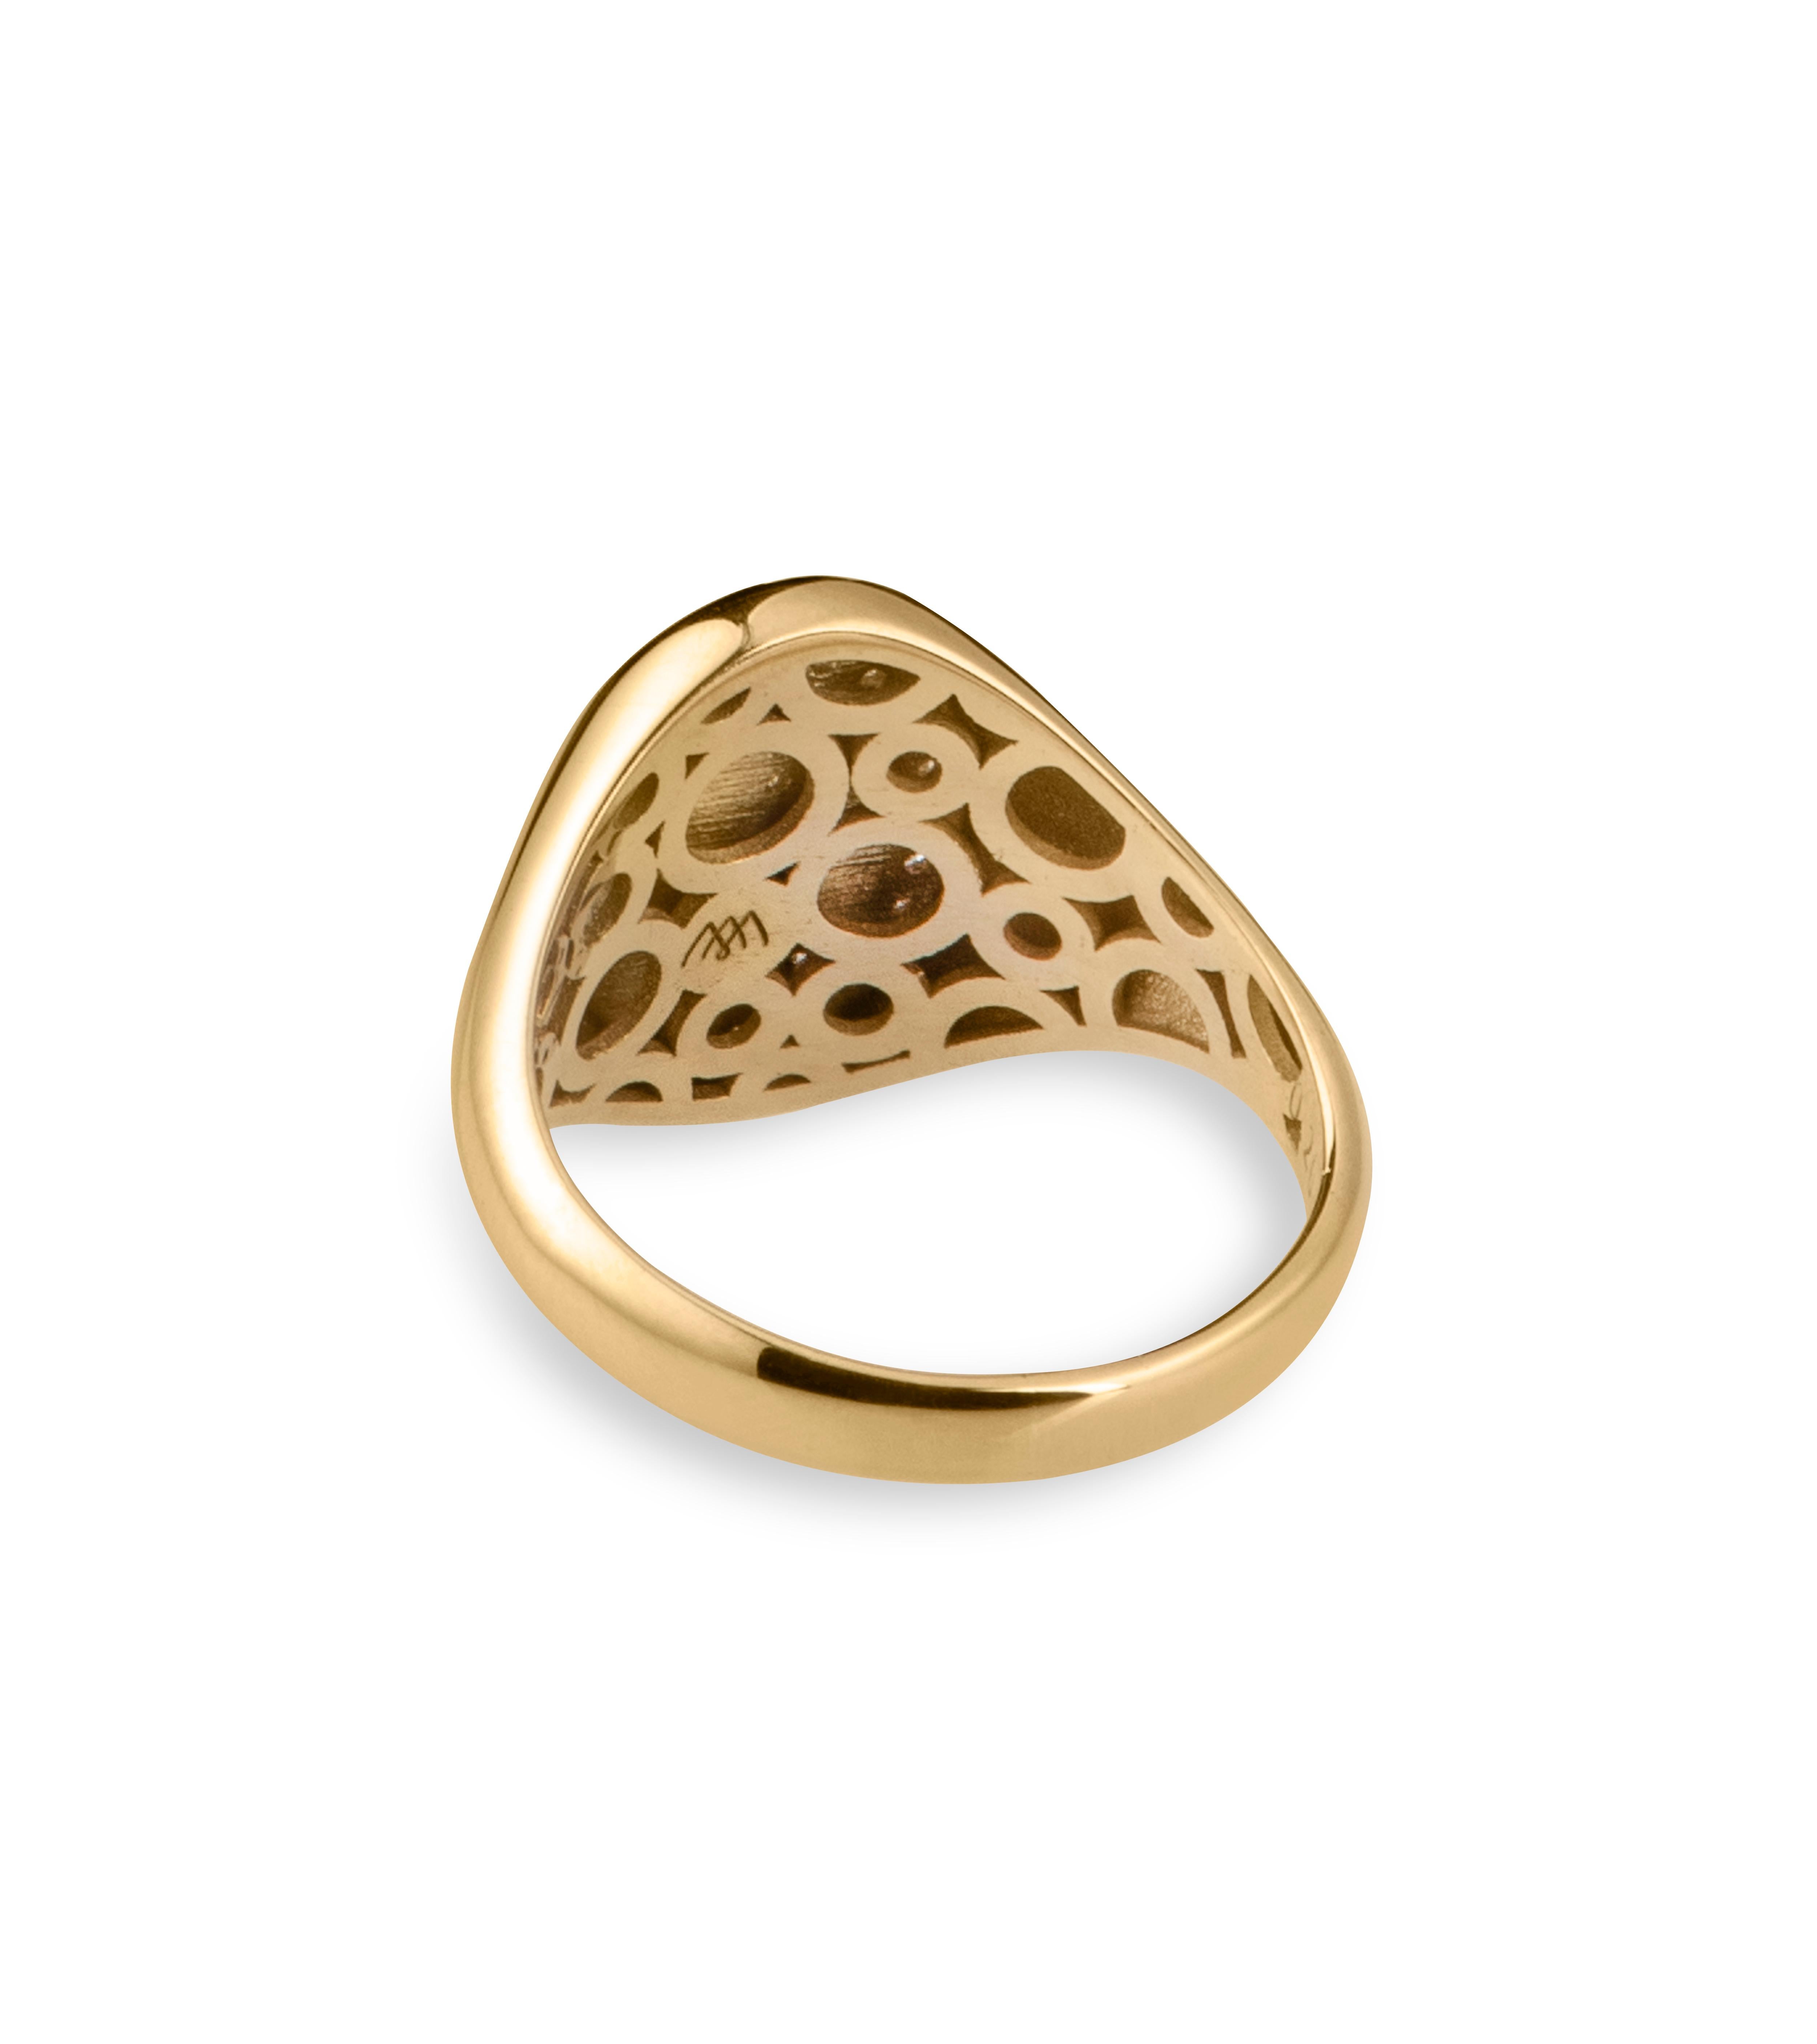 For Sale:  Diamond Signet Ring, Letter E, 18k Gold, by Michelle Massoura 2